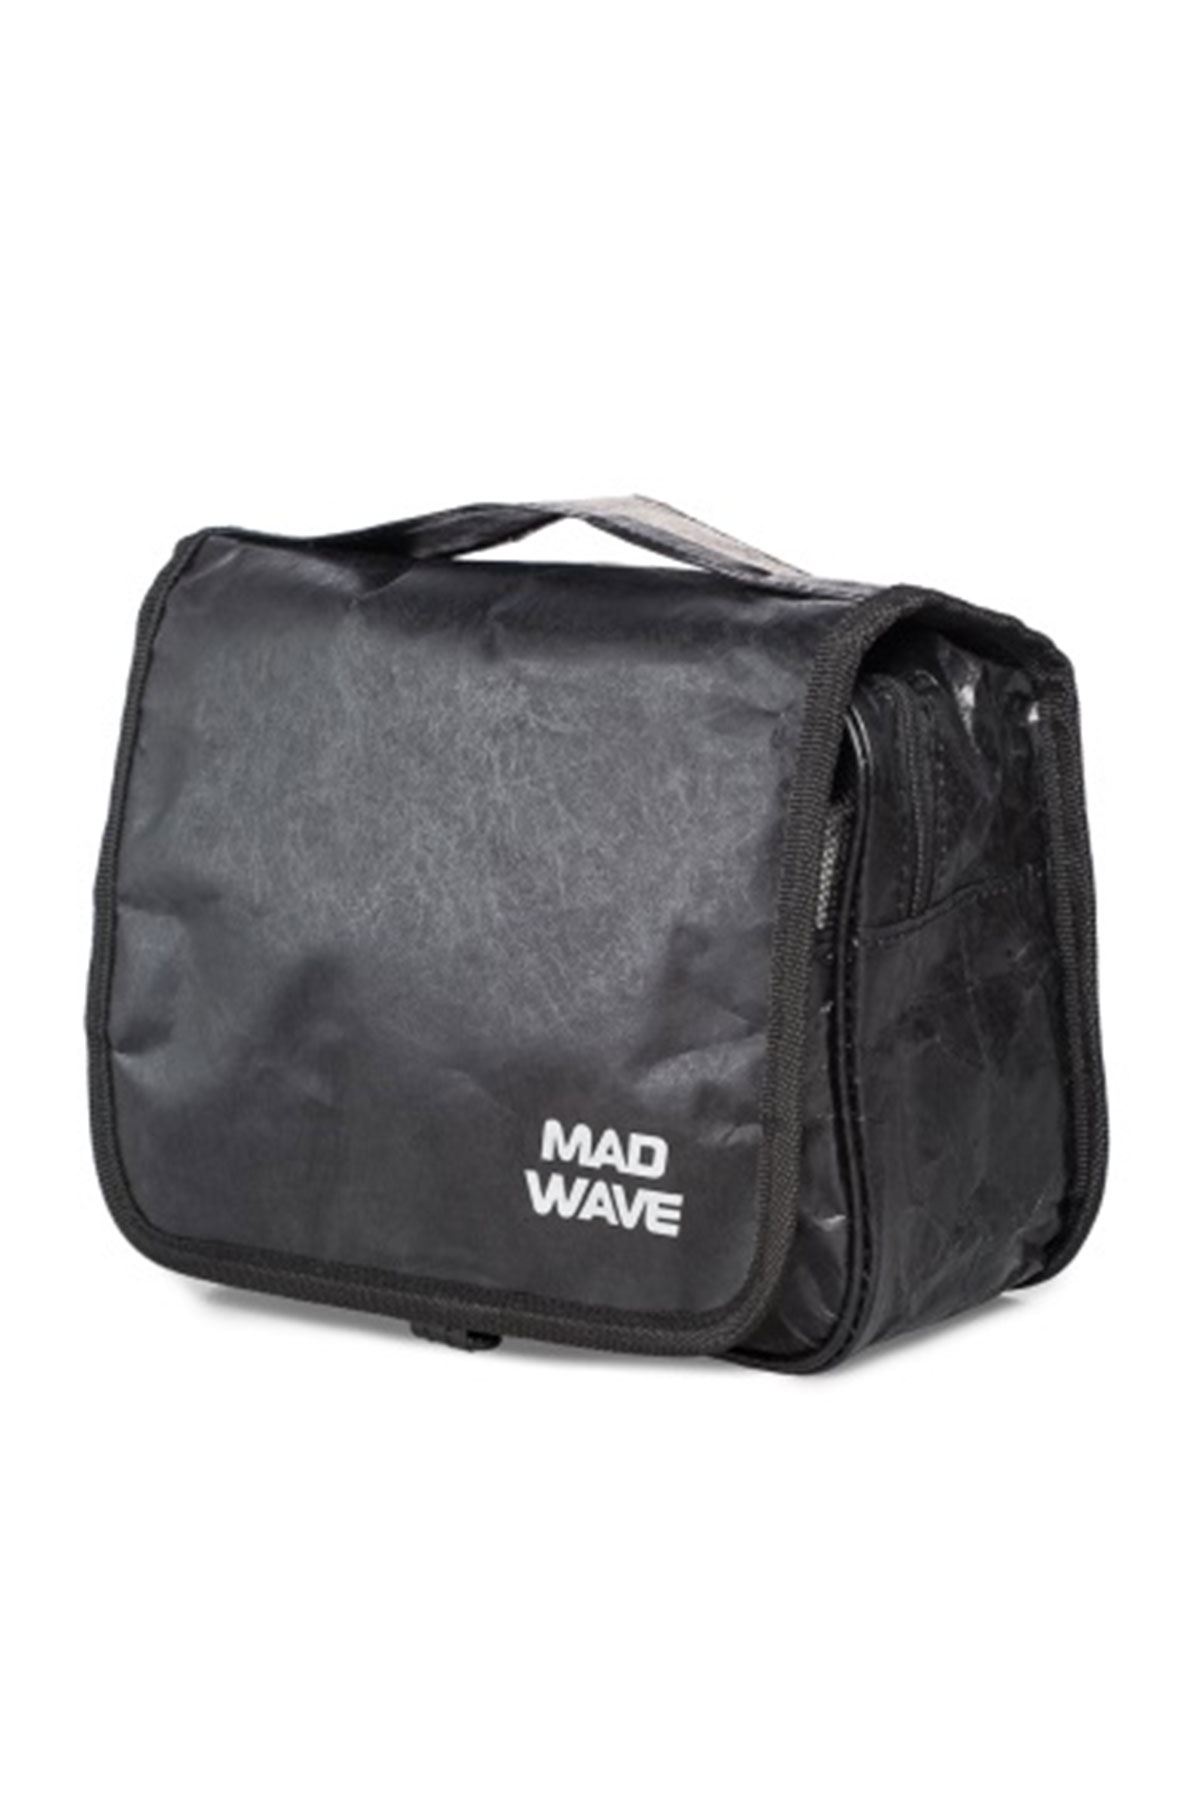 Mad Wave Siyah Kozmetik Seyahat Çantası Boyutları 23*17,5*8 cm